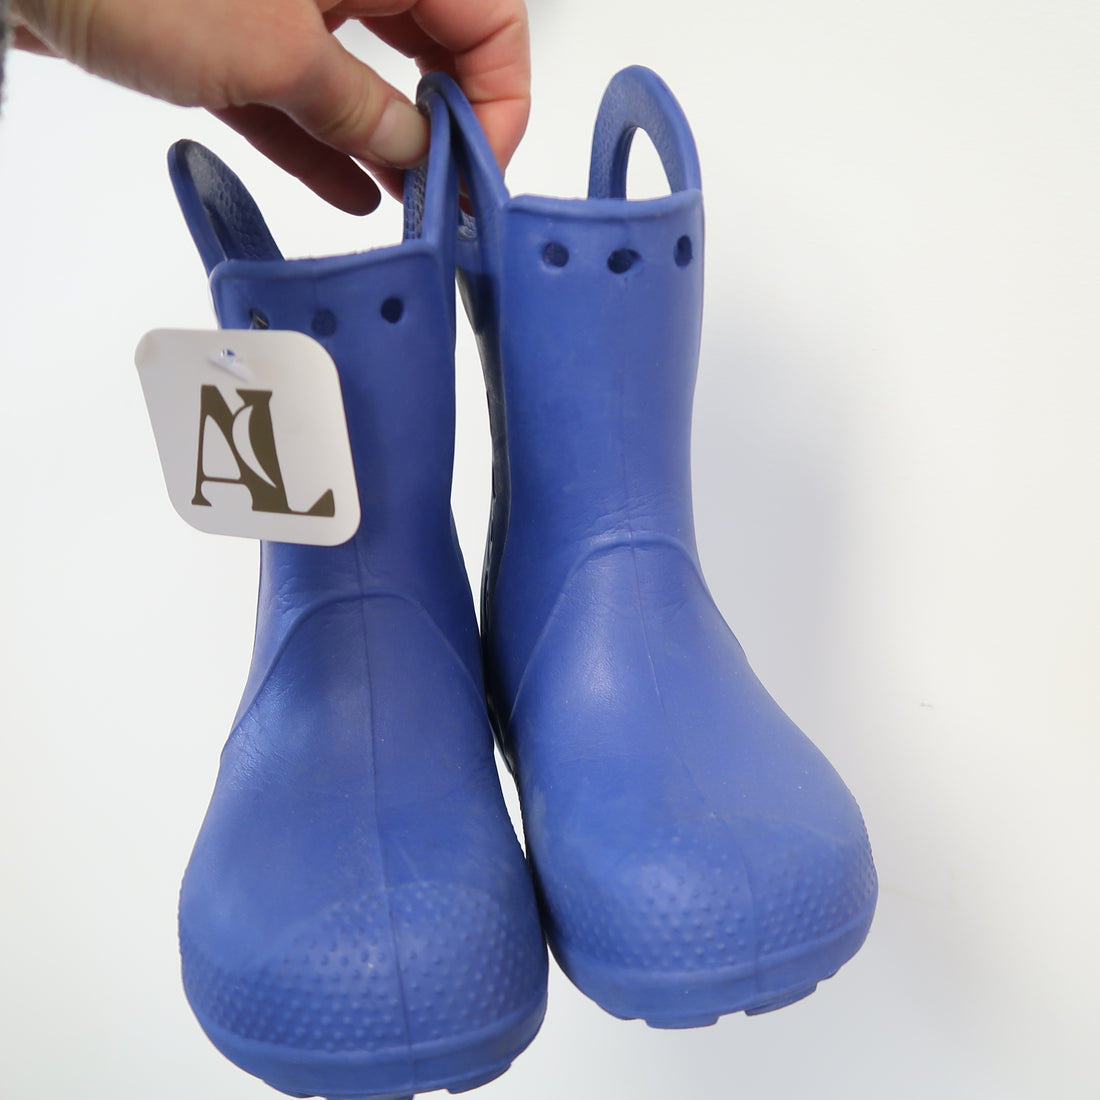 Crocs - Rubber Boots (Shoes - 9)